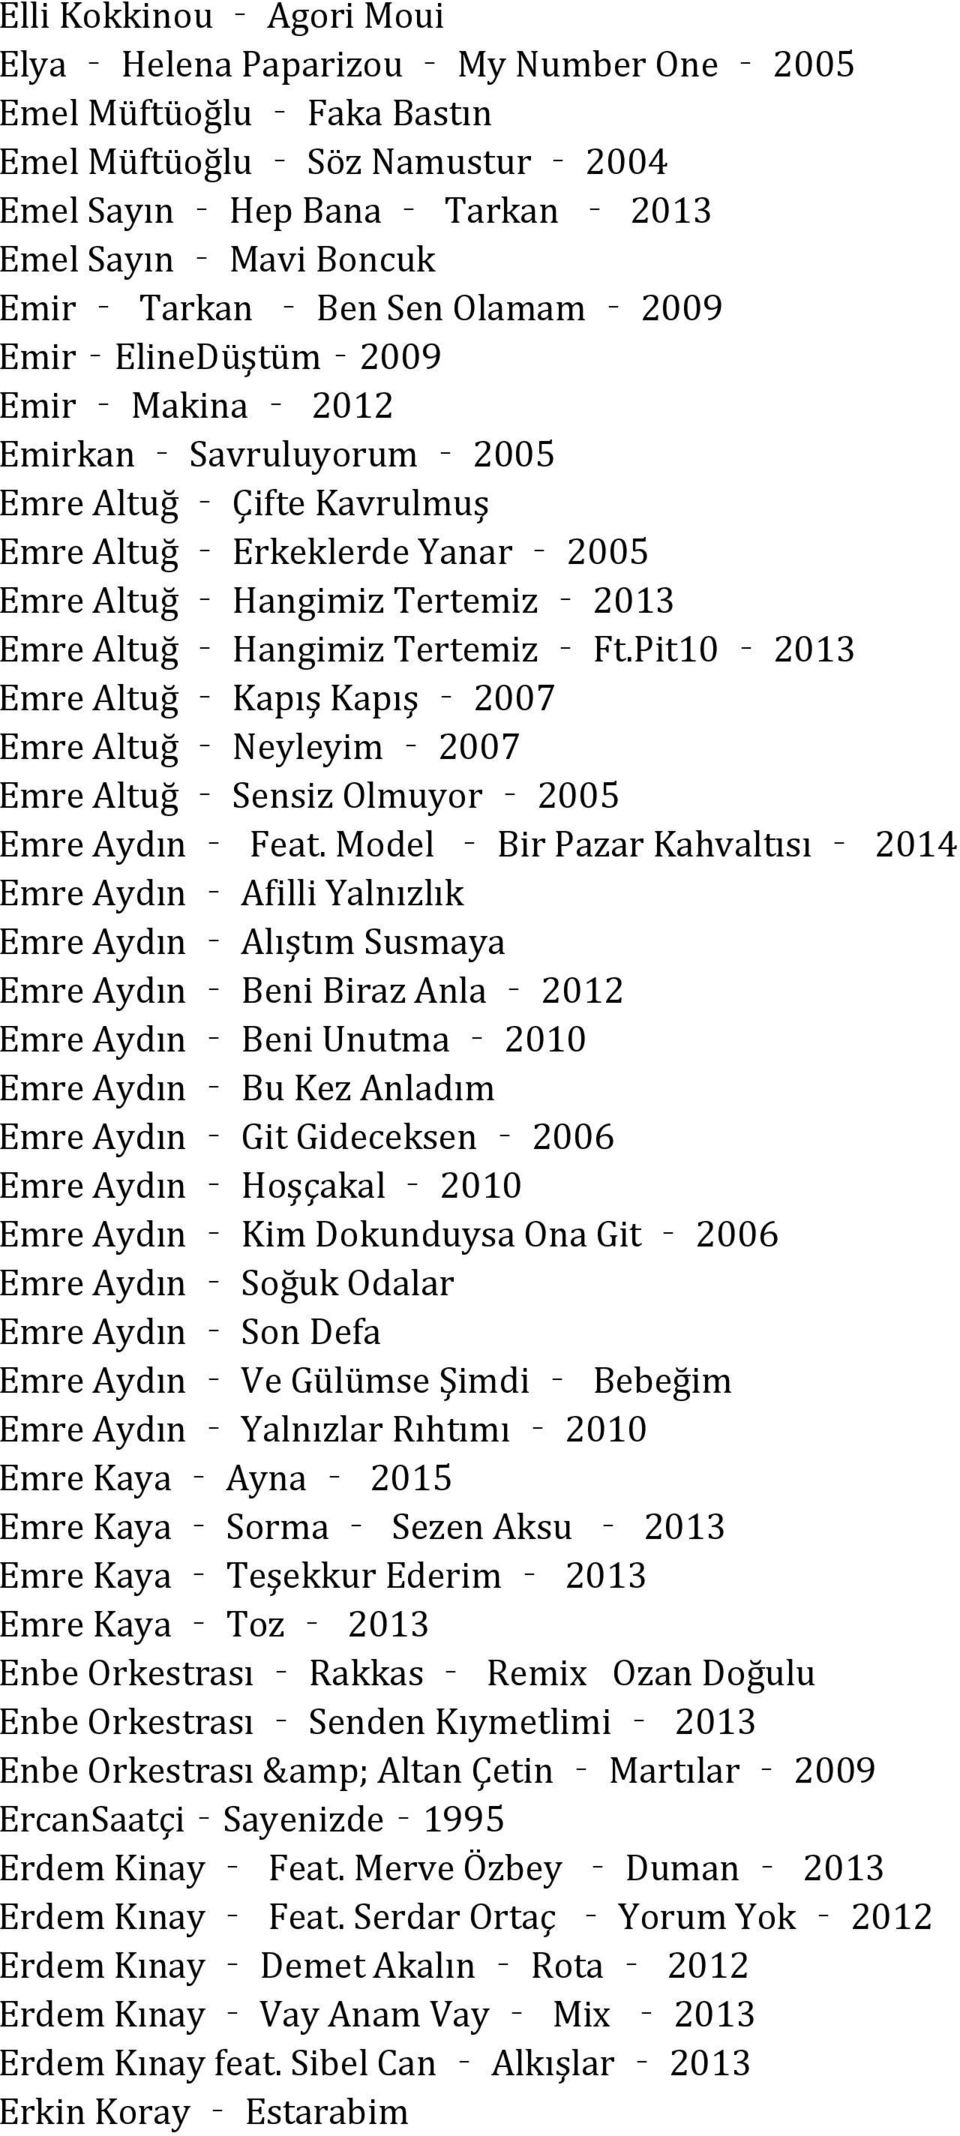 Tertemiz Ft.Pit10 2013 Emre Altuğ Kapış Kapış 2007 Emre Altuğ Neyleyim 2007 Emre Altuğ Sensiz Olmuyor 2005 Emre Aydın Feat.